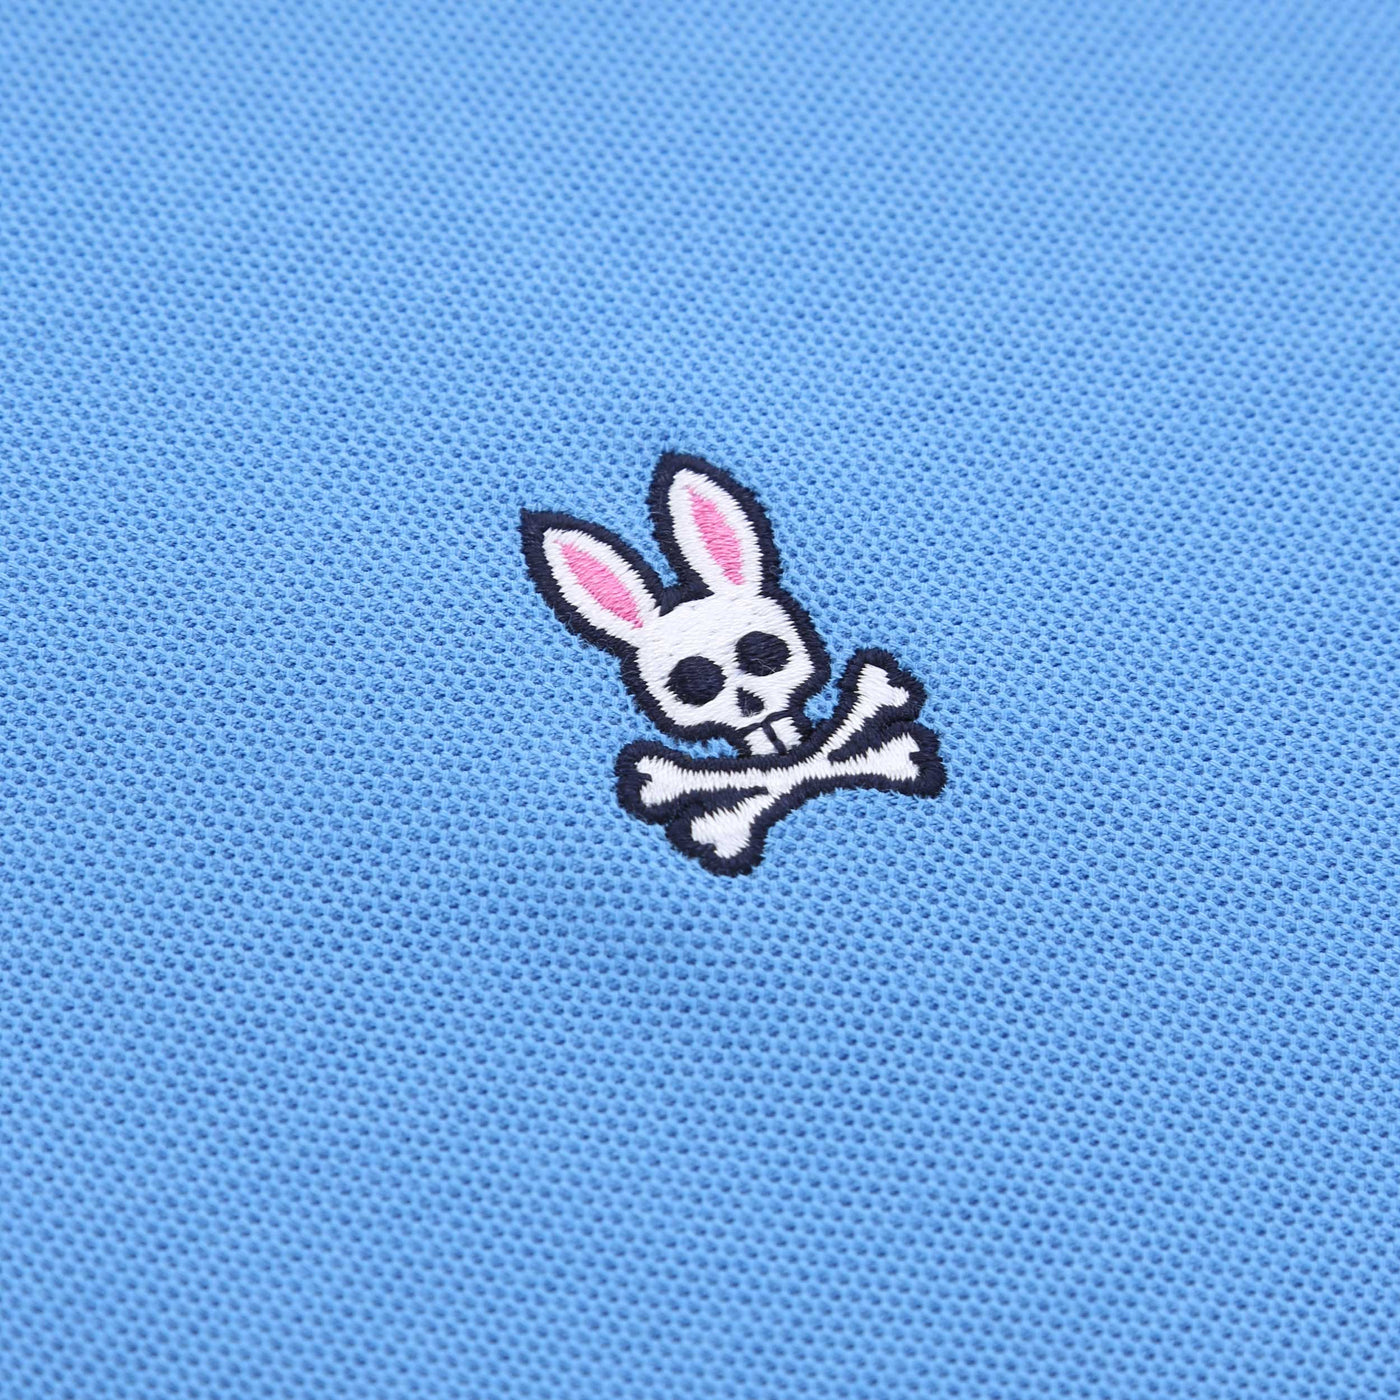 Psycho Bunny Classic Polo Shirt in Marina Blue Logo